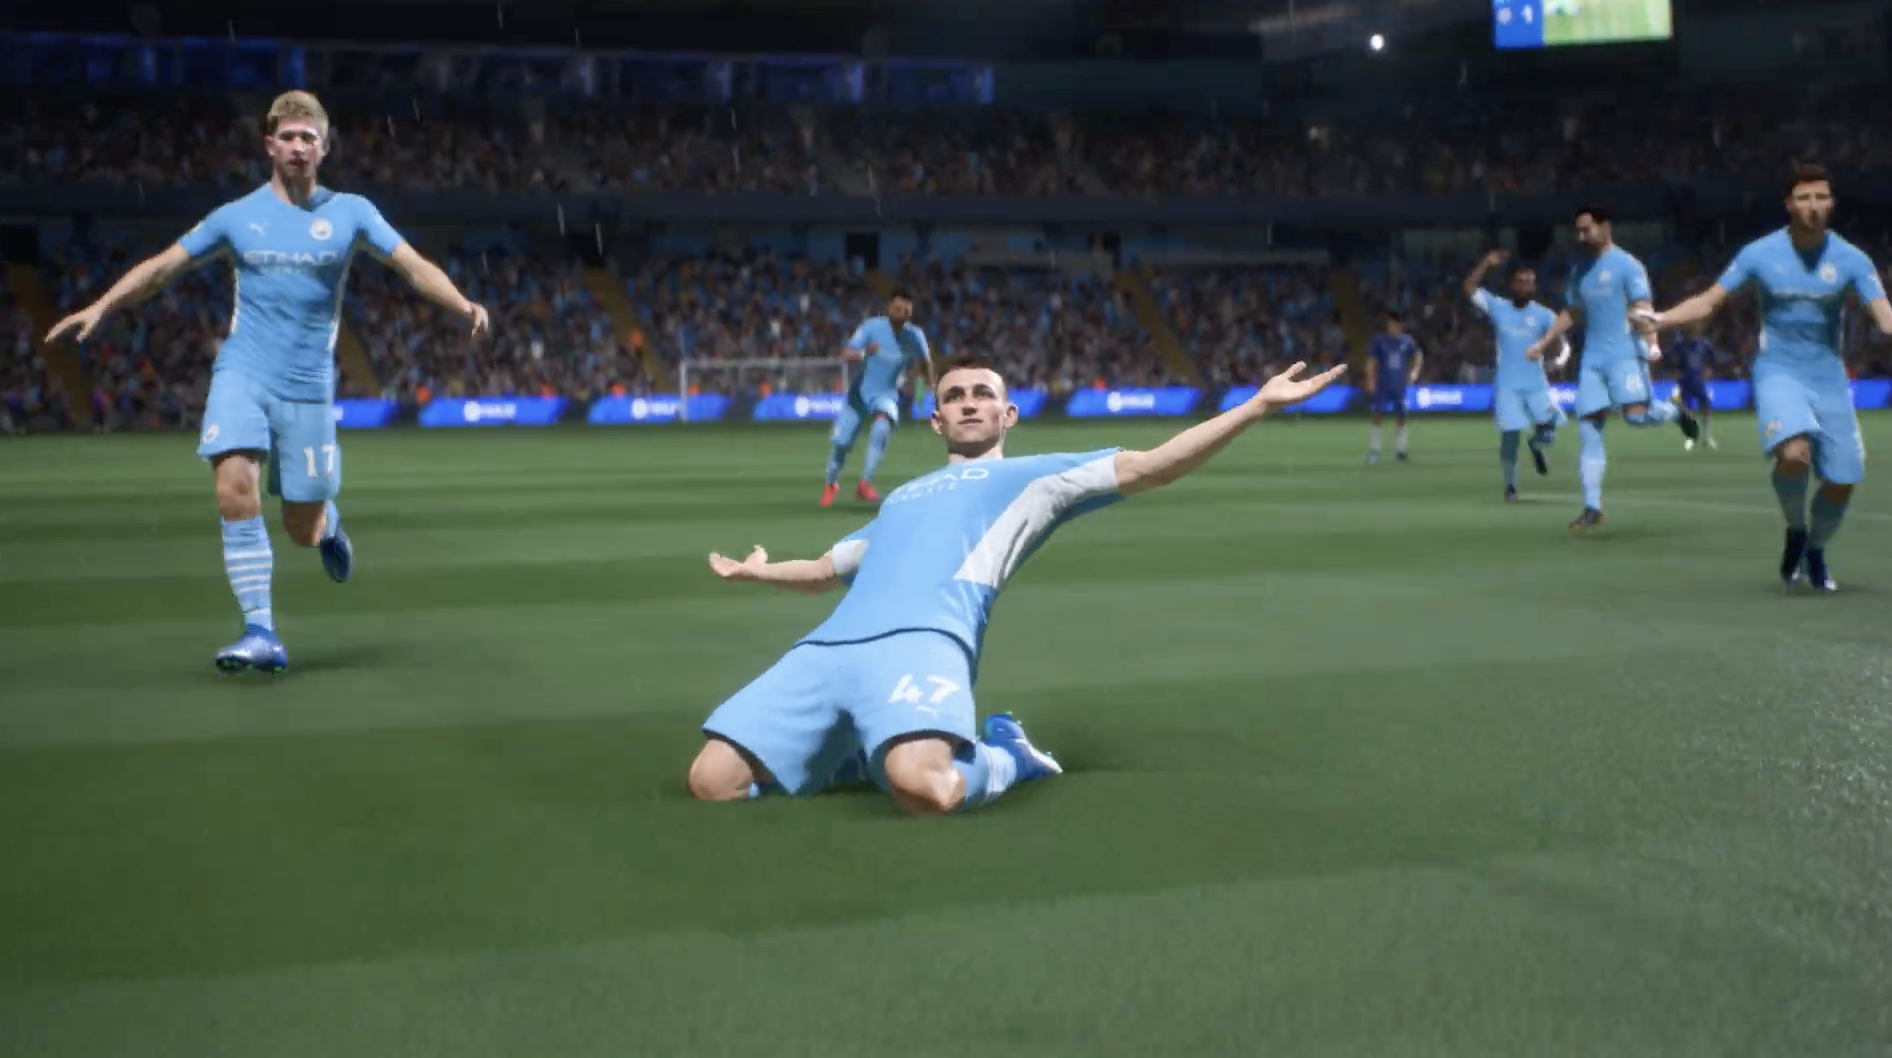 FIFA 22 no Xbox Game Pass: jogo ganha data para chegar ao EA Play